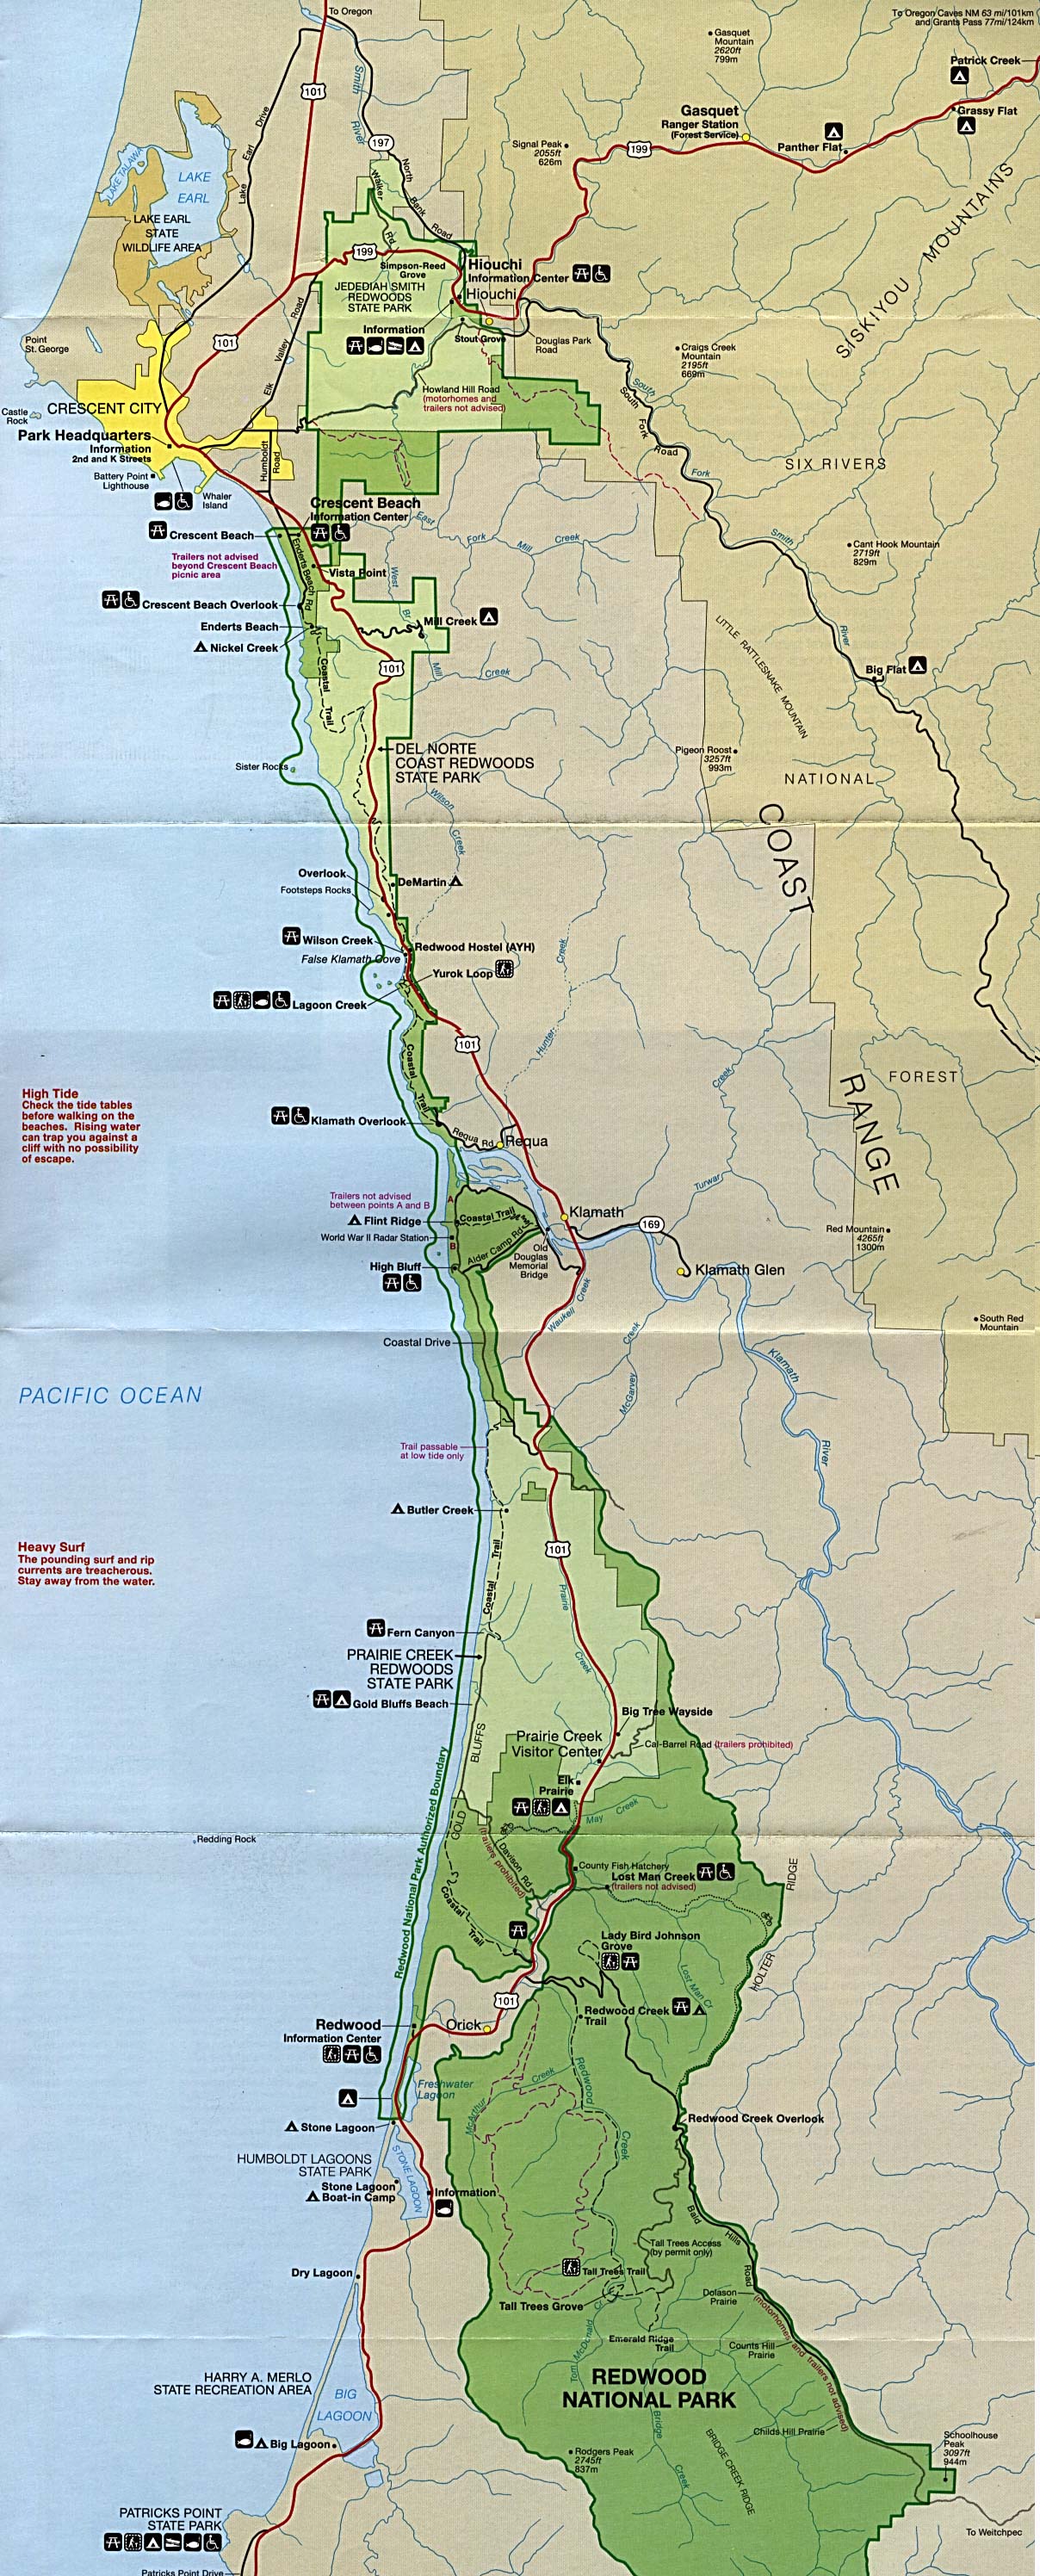 redwood-national-park-map-redwood-national-park-mappery